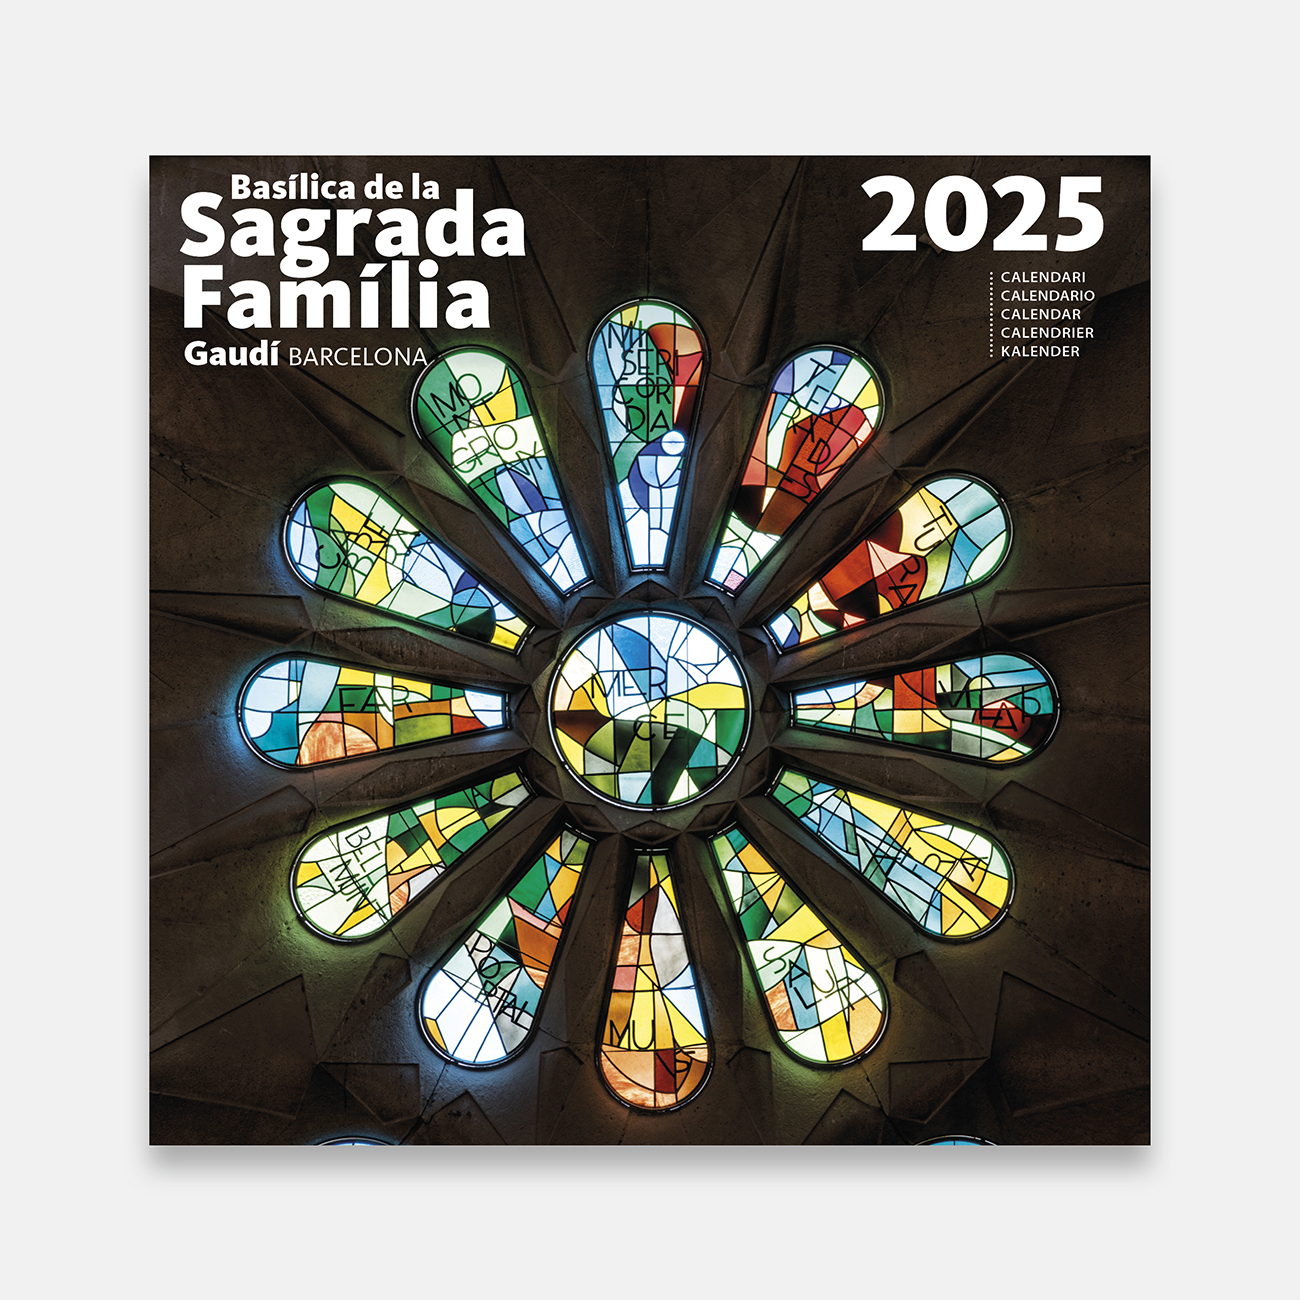 Calendari 2025 Basílica de la Sagrada Família (Vitralls) 25sf2 calendario pared 2025 sagrada familia